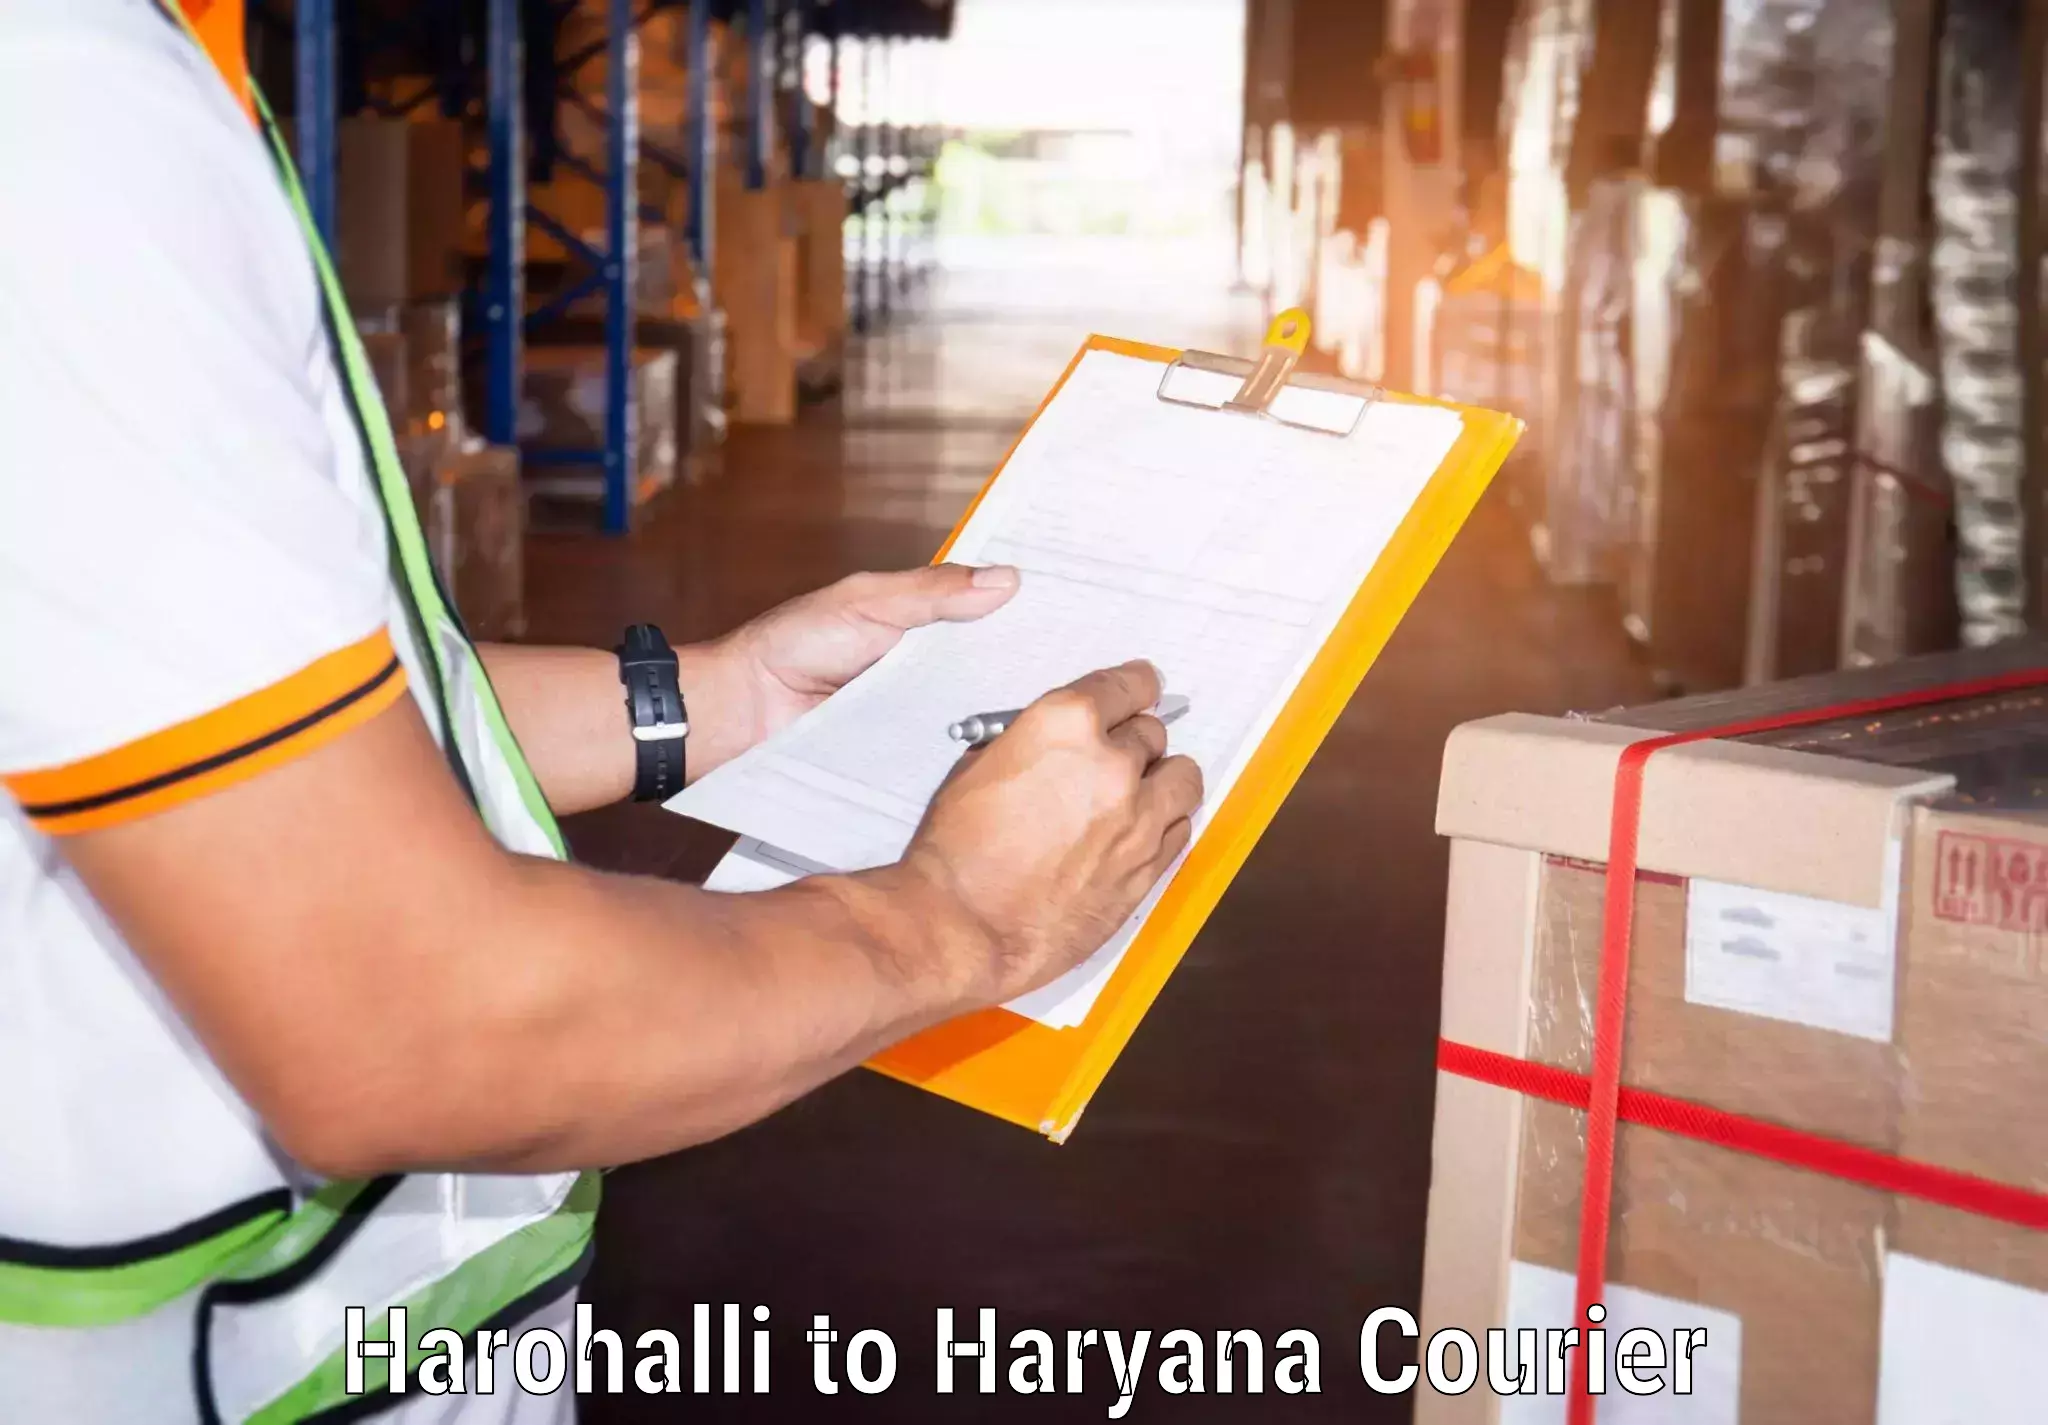 Enhanced tracking features Harohalli to Haryana